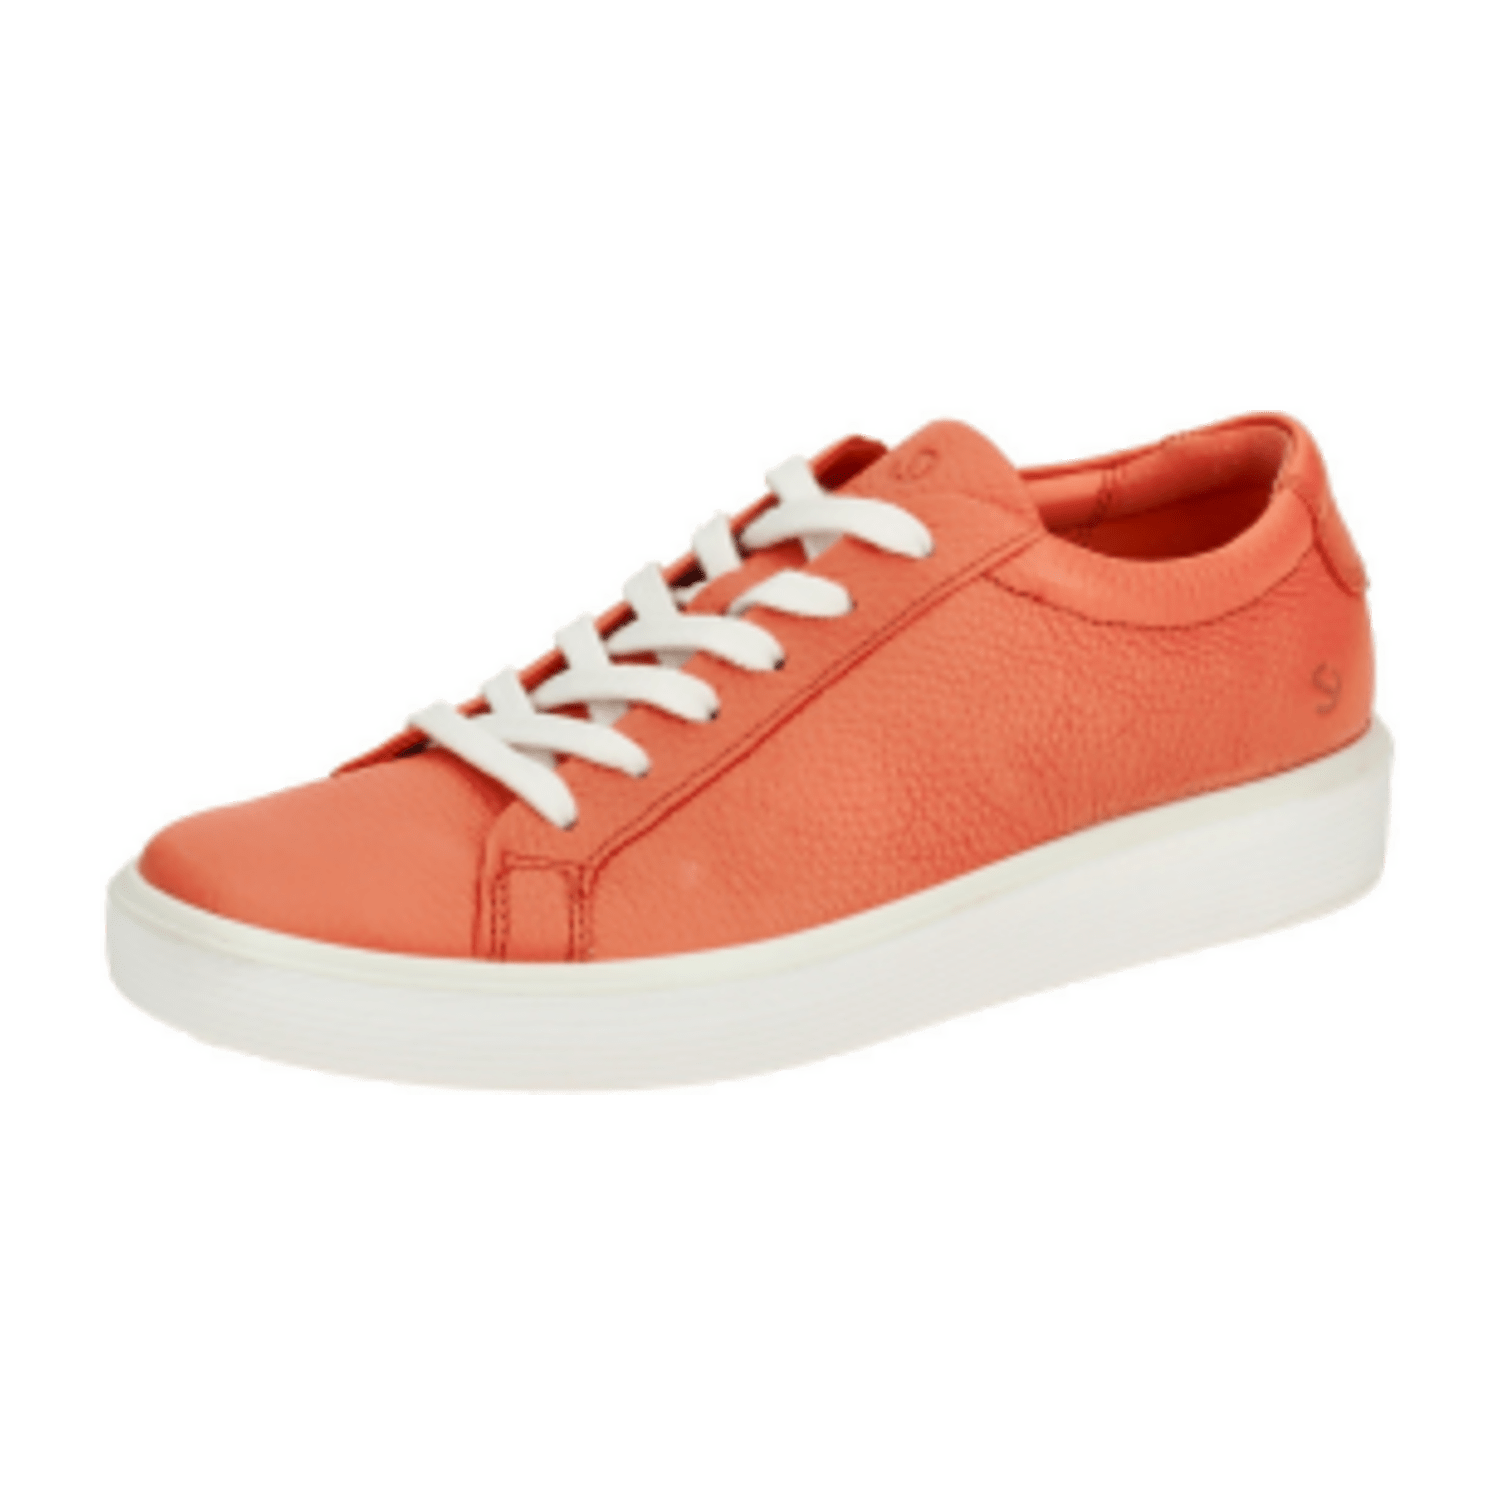 Ecco Soft 60 Schuhe Sneakers rot coral Damen 219203